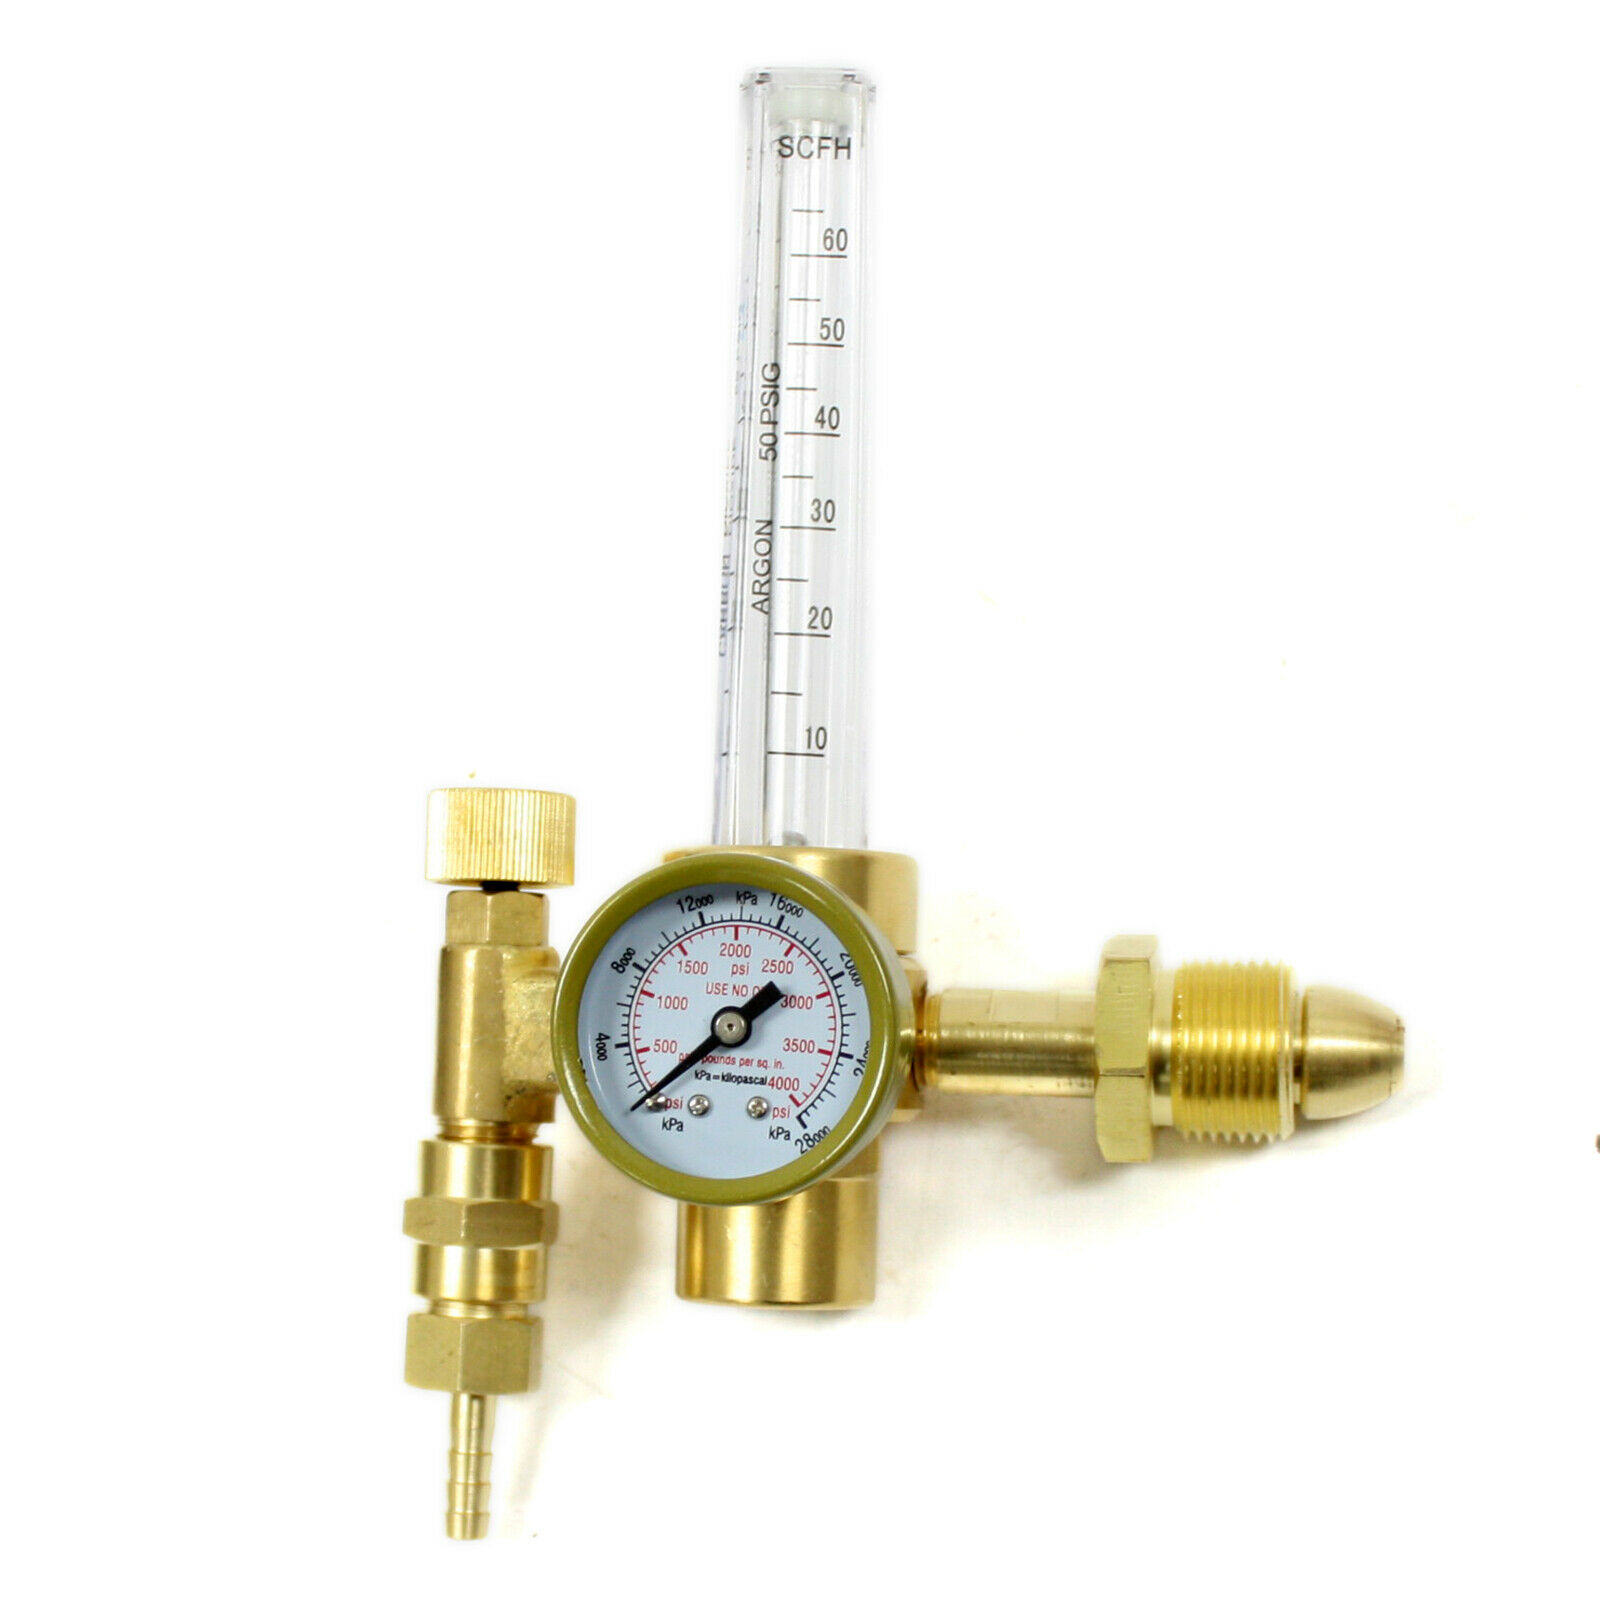 Pressure Regulator Welding Gauge Welder 0-25MPa Argon Flow Meter Pressure Regulator Gauge for Weld Mig Tig Welding